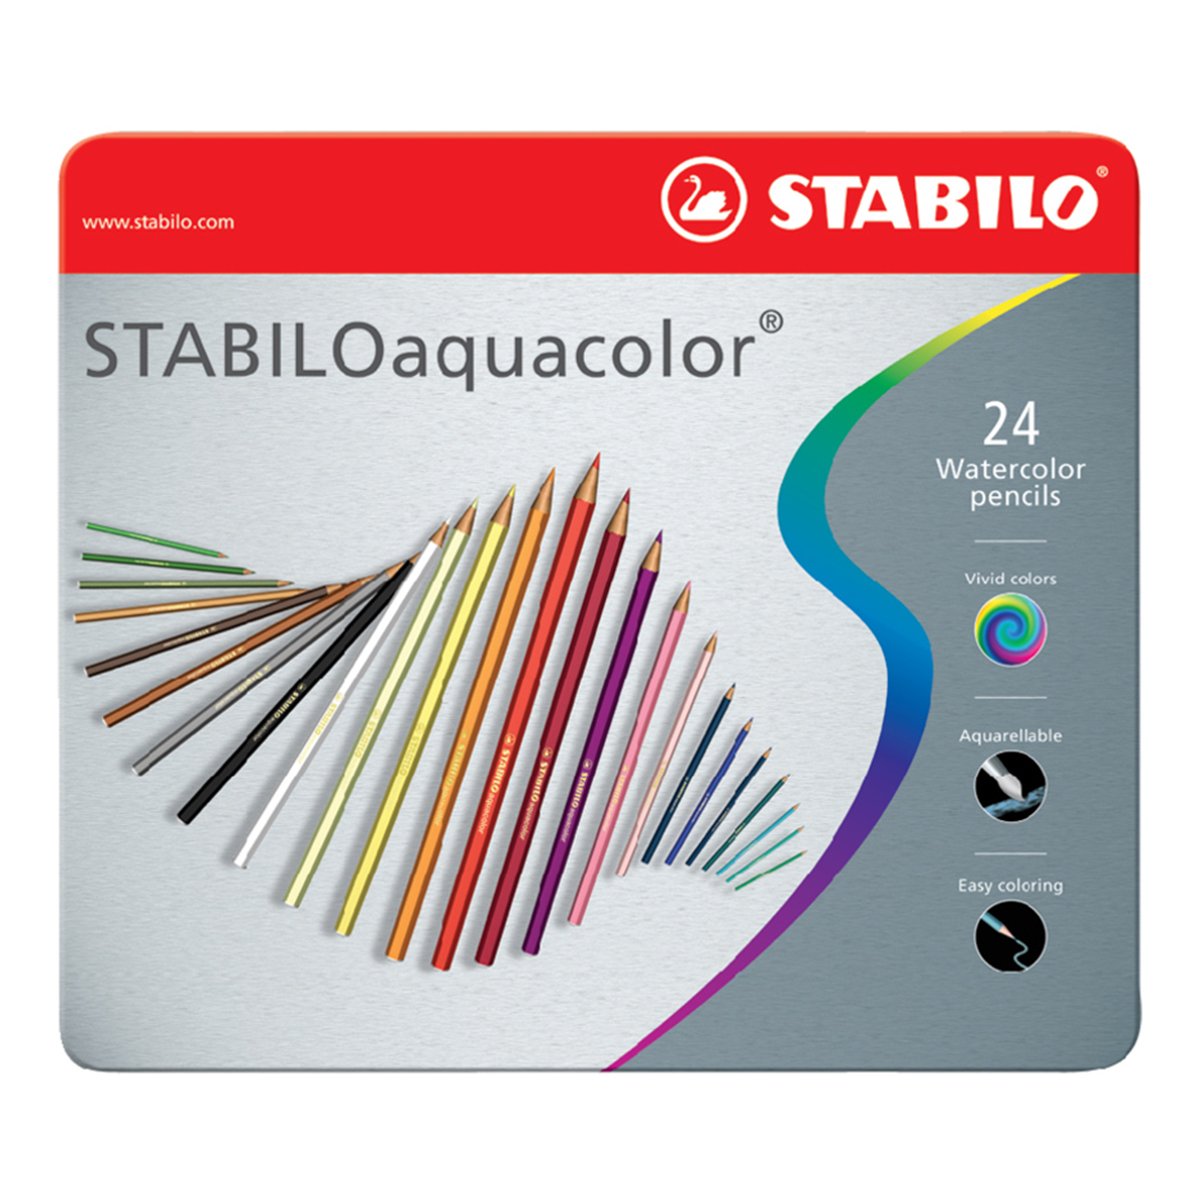 STABILO 1624-5 - Estuche de Metal con 24 Lápices de Colores Brillantes Acuarelables